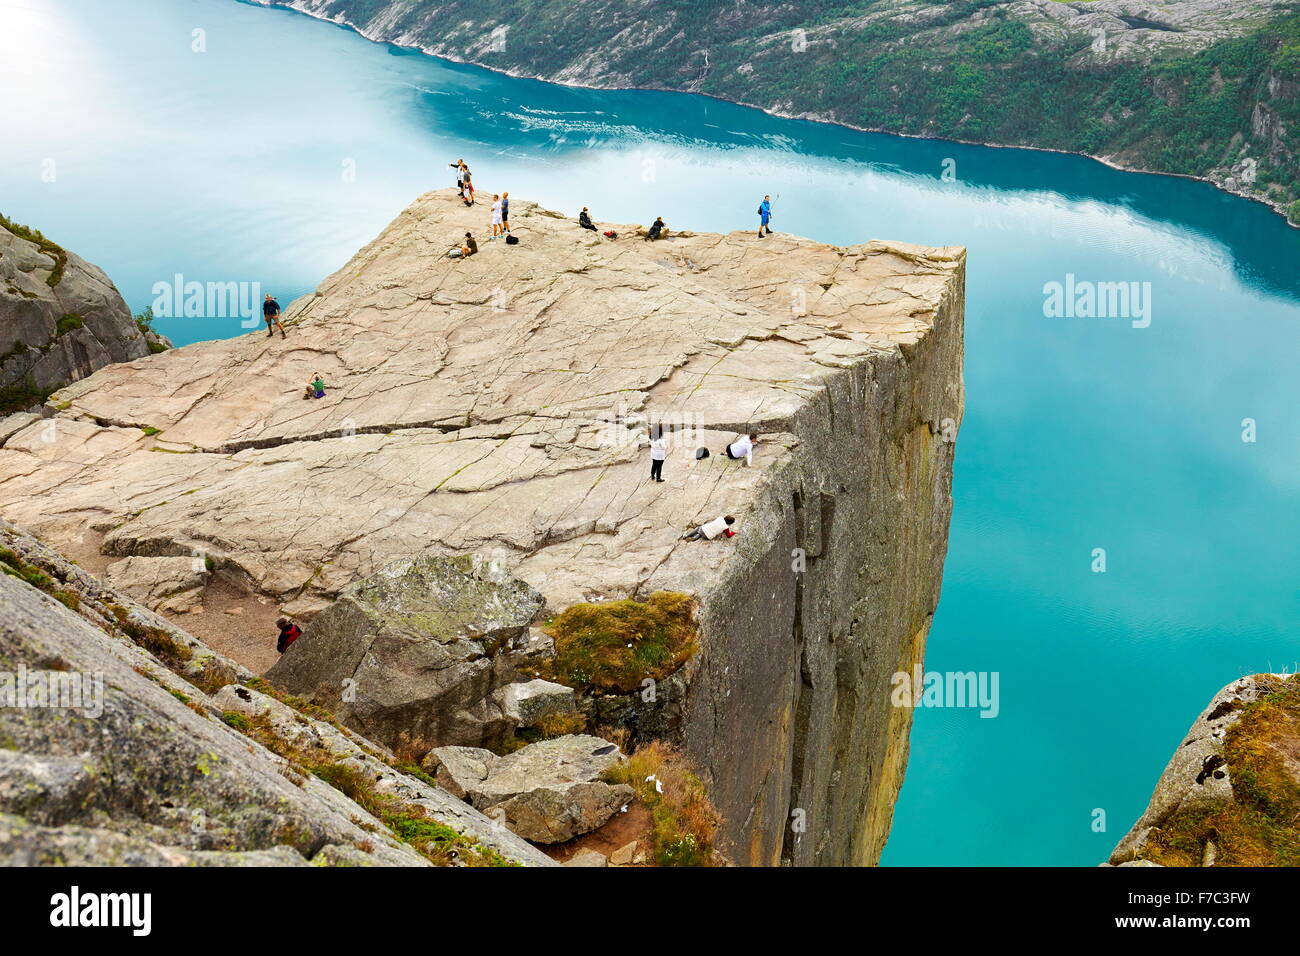 Preikestolen, Pulpit Rock, Lysefjorden, Norvège Banque D'Images